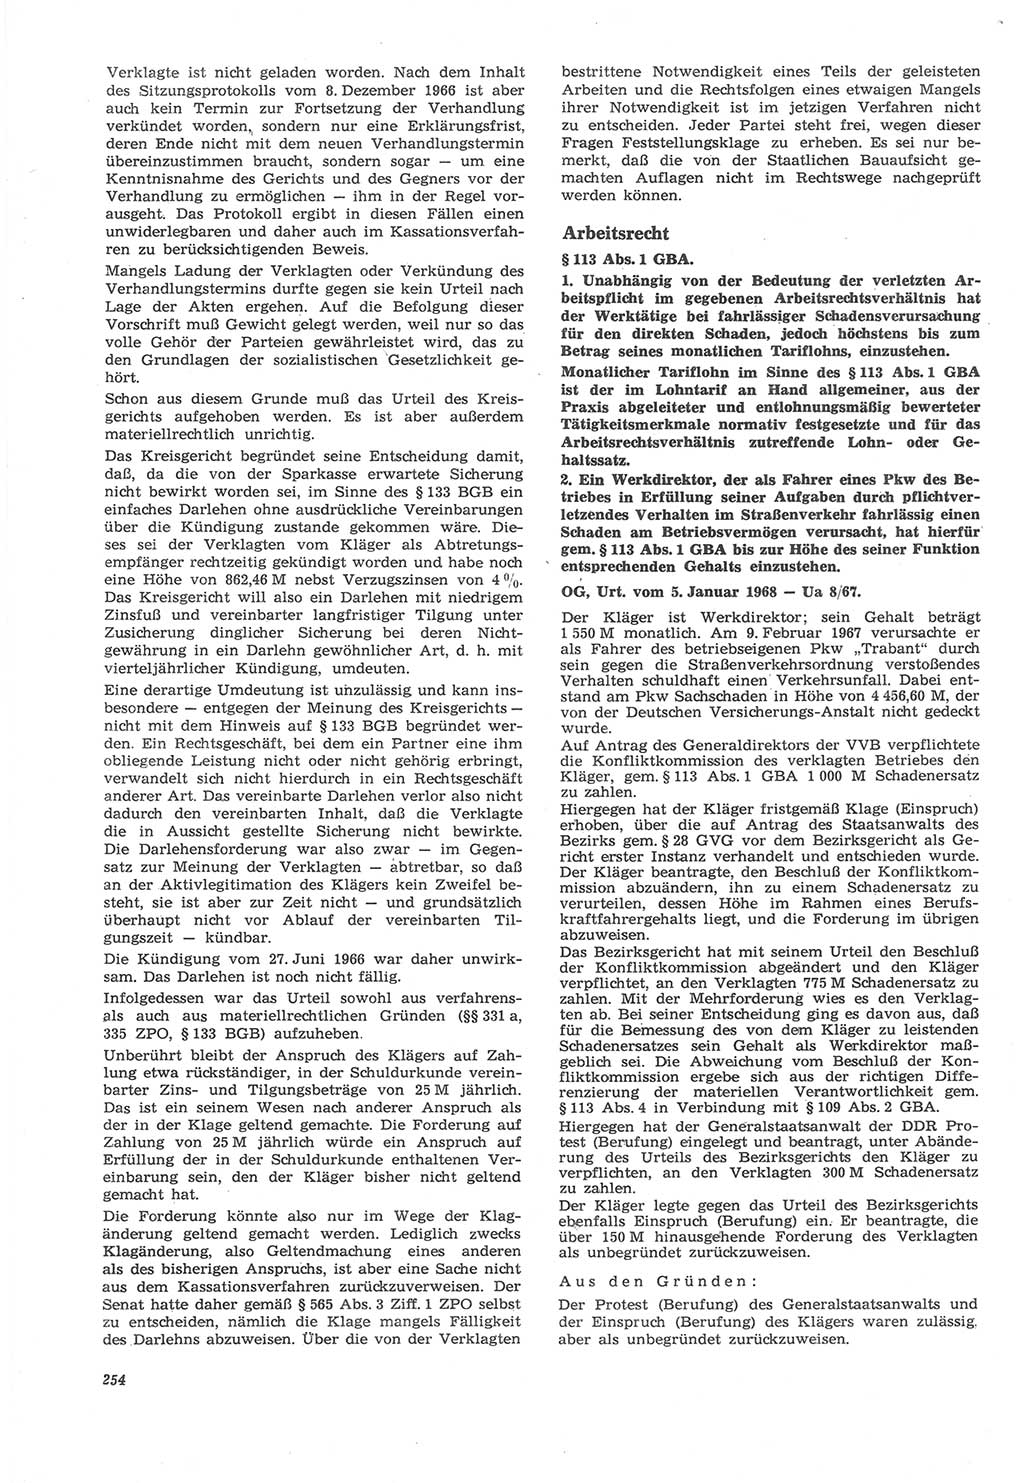 Neue Justiz (NJ), Zeitschrift für Recht und Rechtswissenschaft [Deutsche Demokratische Republik (DDR)], 22. Jahrgang 1968, Seite 254 (NJ DDR 1968, S. 254)